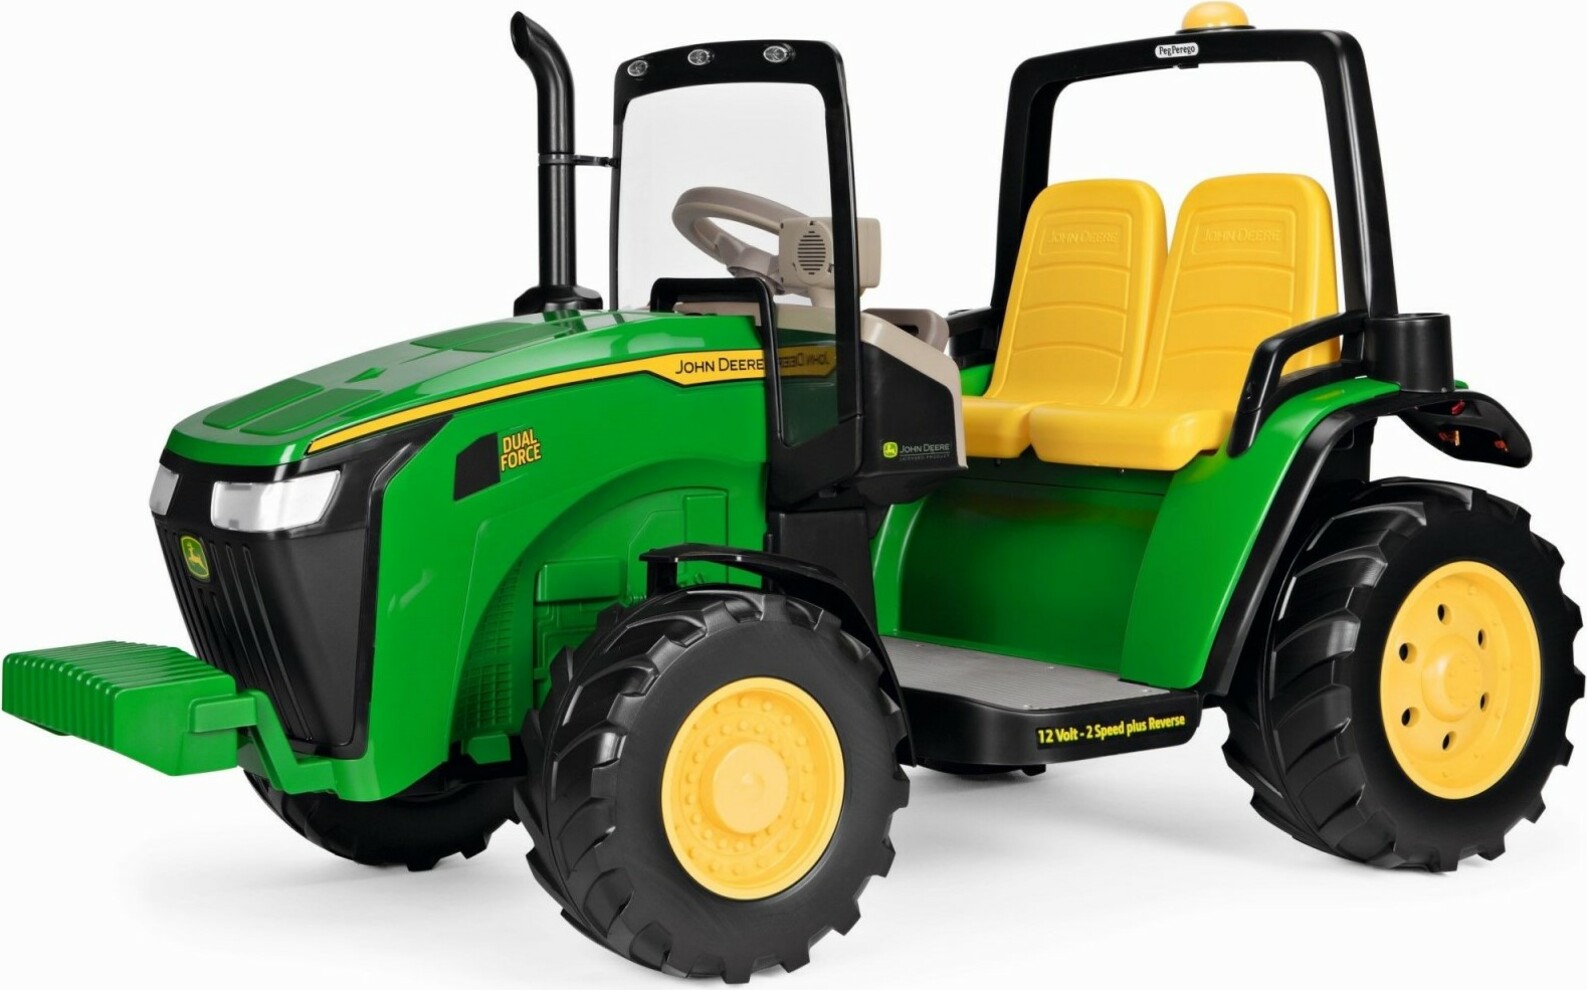 PEG Perego Traktor 12V, 2xVor/1xRückwärts, guter Zustand in Sachsen -  Mohorn, Spielzeug für draussen günstig kaufen, gebraucht oder neu